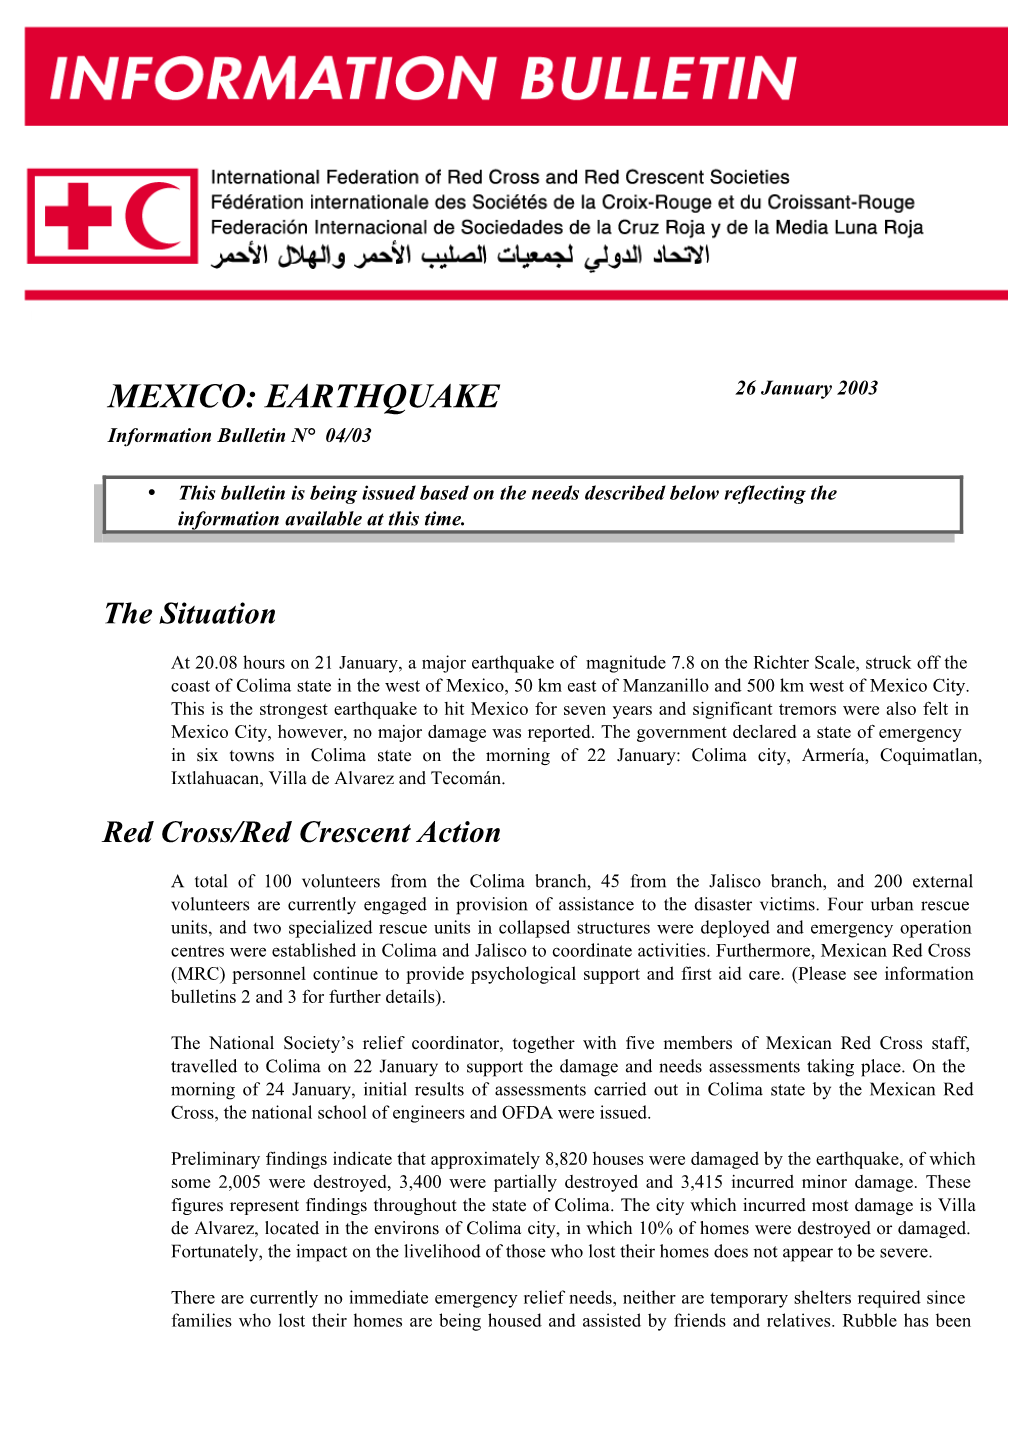 Mexico Earthquake Information Bulletin No.4